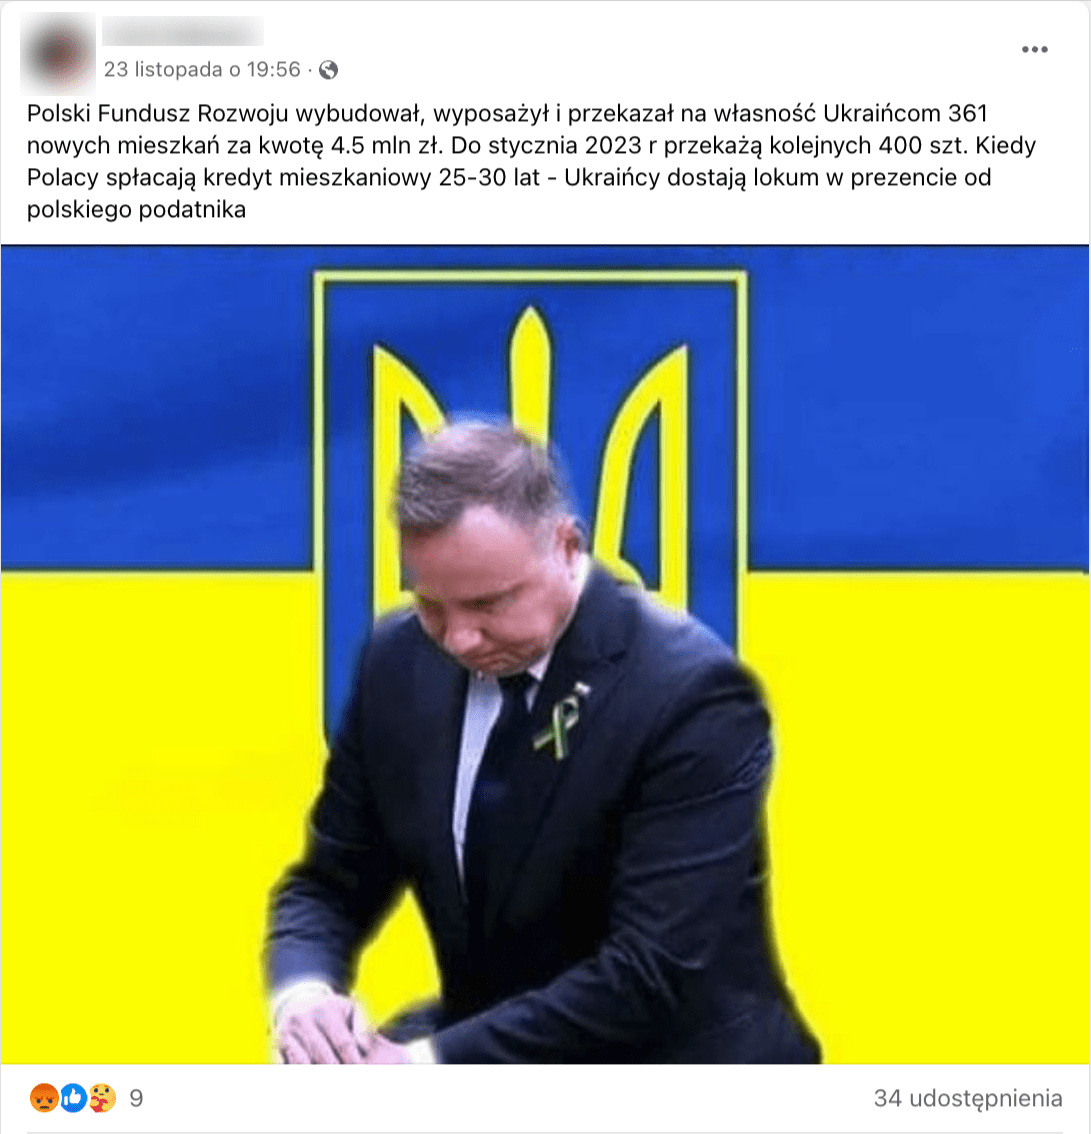 Zrzut ekranu z Facebooka. Do posta dołączono zdjęcie prezydenta Andrzeja Dudy na tle flagi Ukrainy.